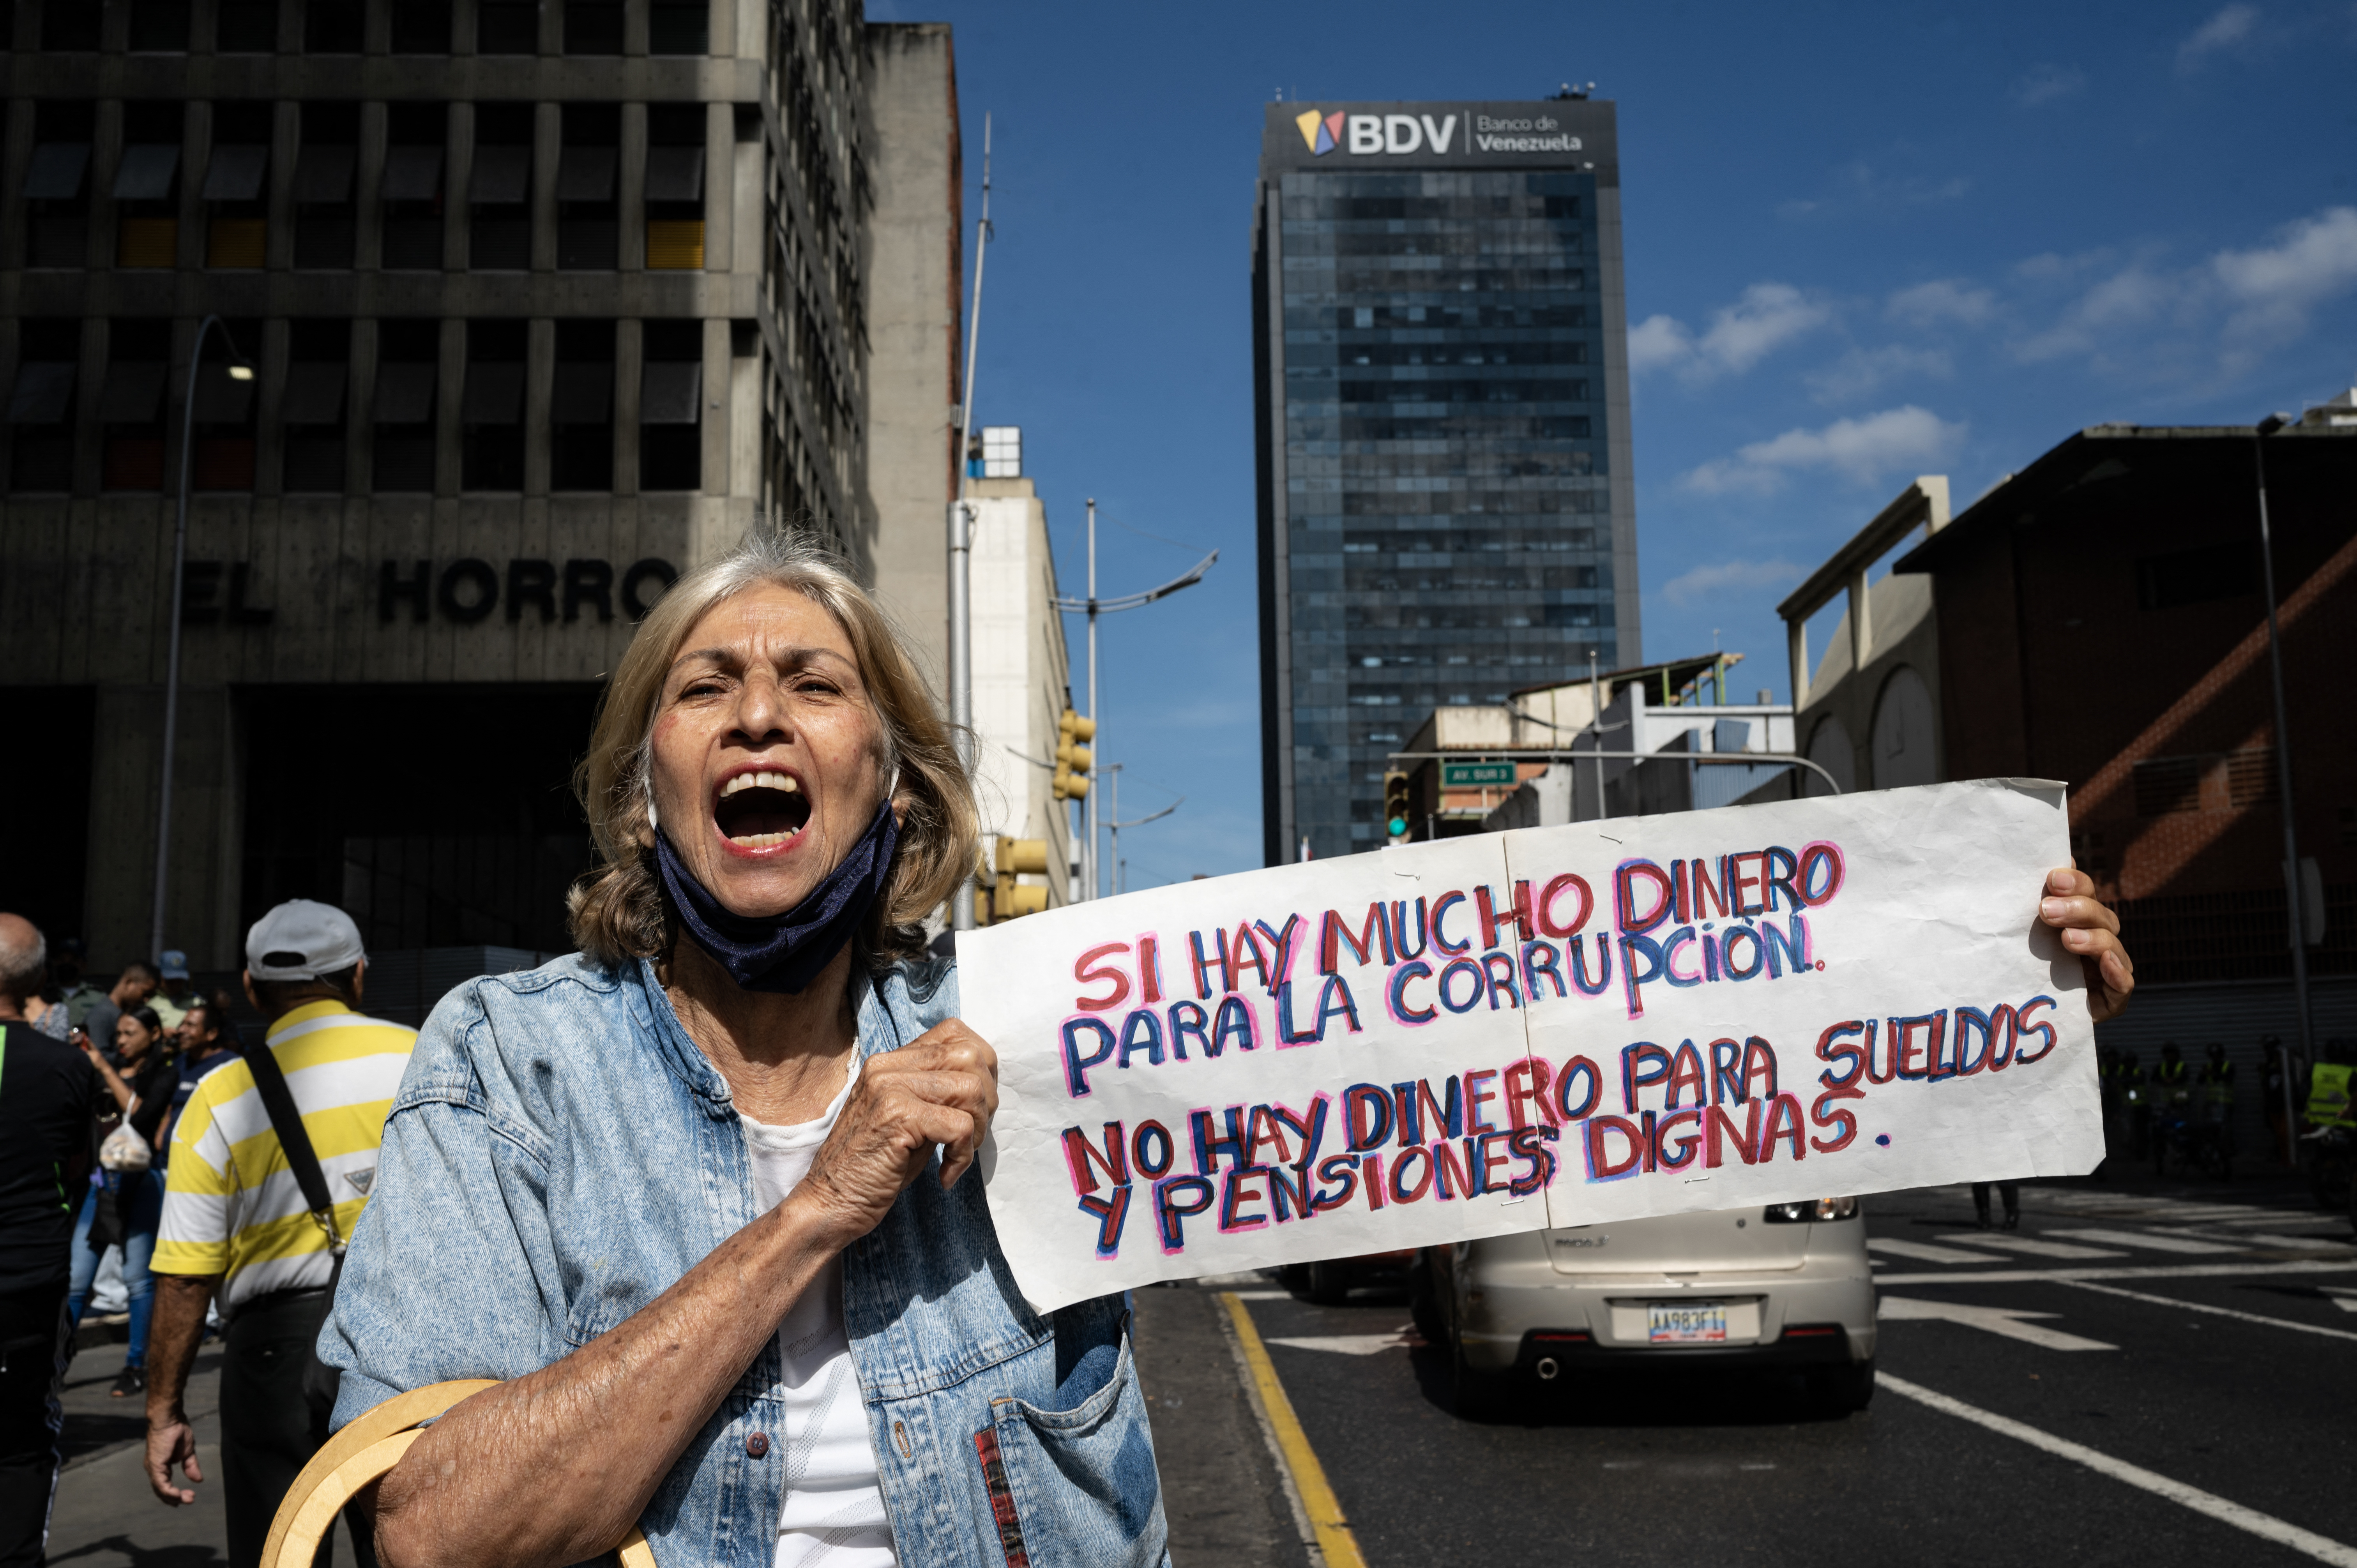 Trabajadores públicos y jubilados de Venezuela protagonizaron nuevas protestas en contra del régimen y en reclamo por sueldos dignos